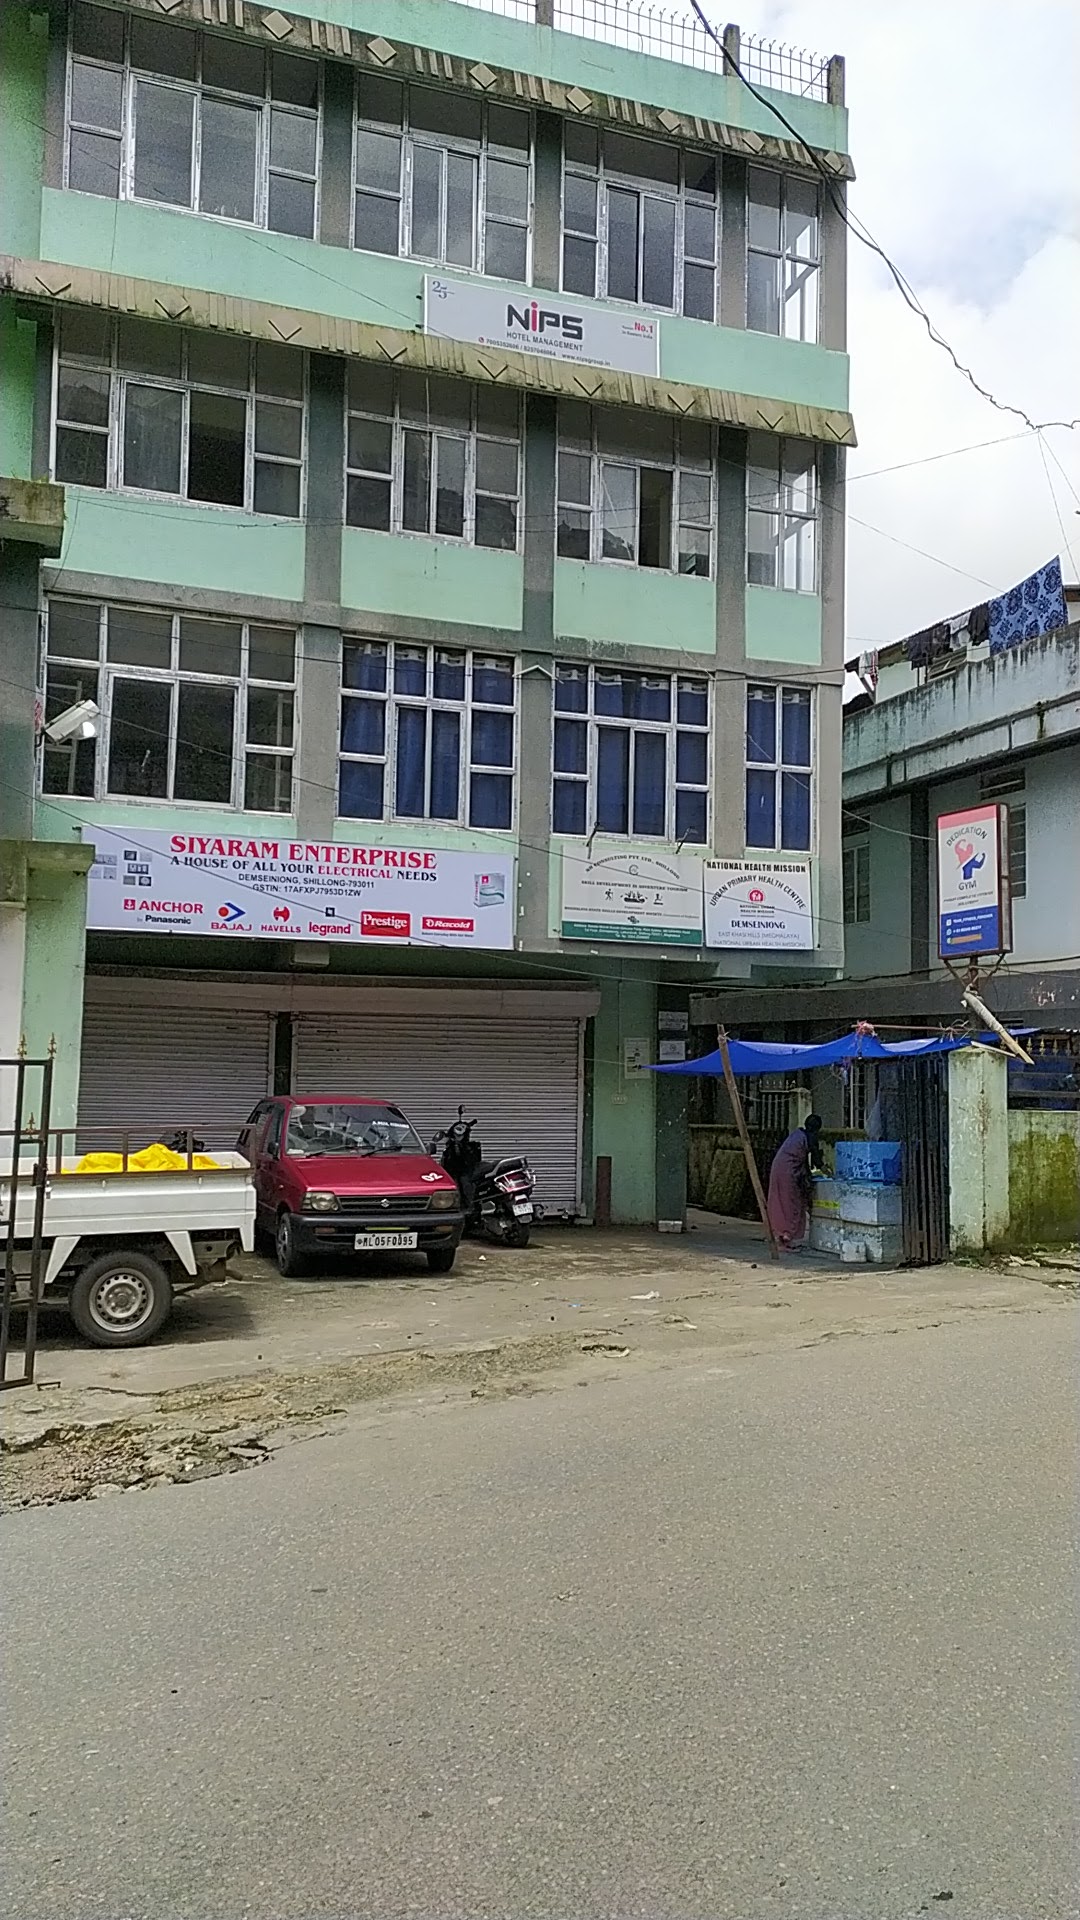 Urban Primary Health Centre